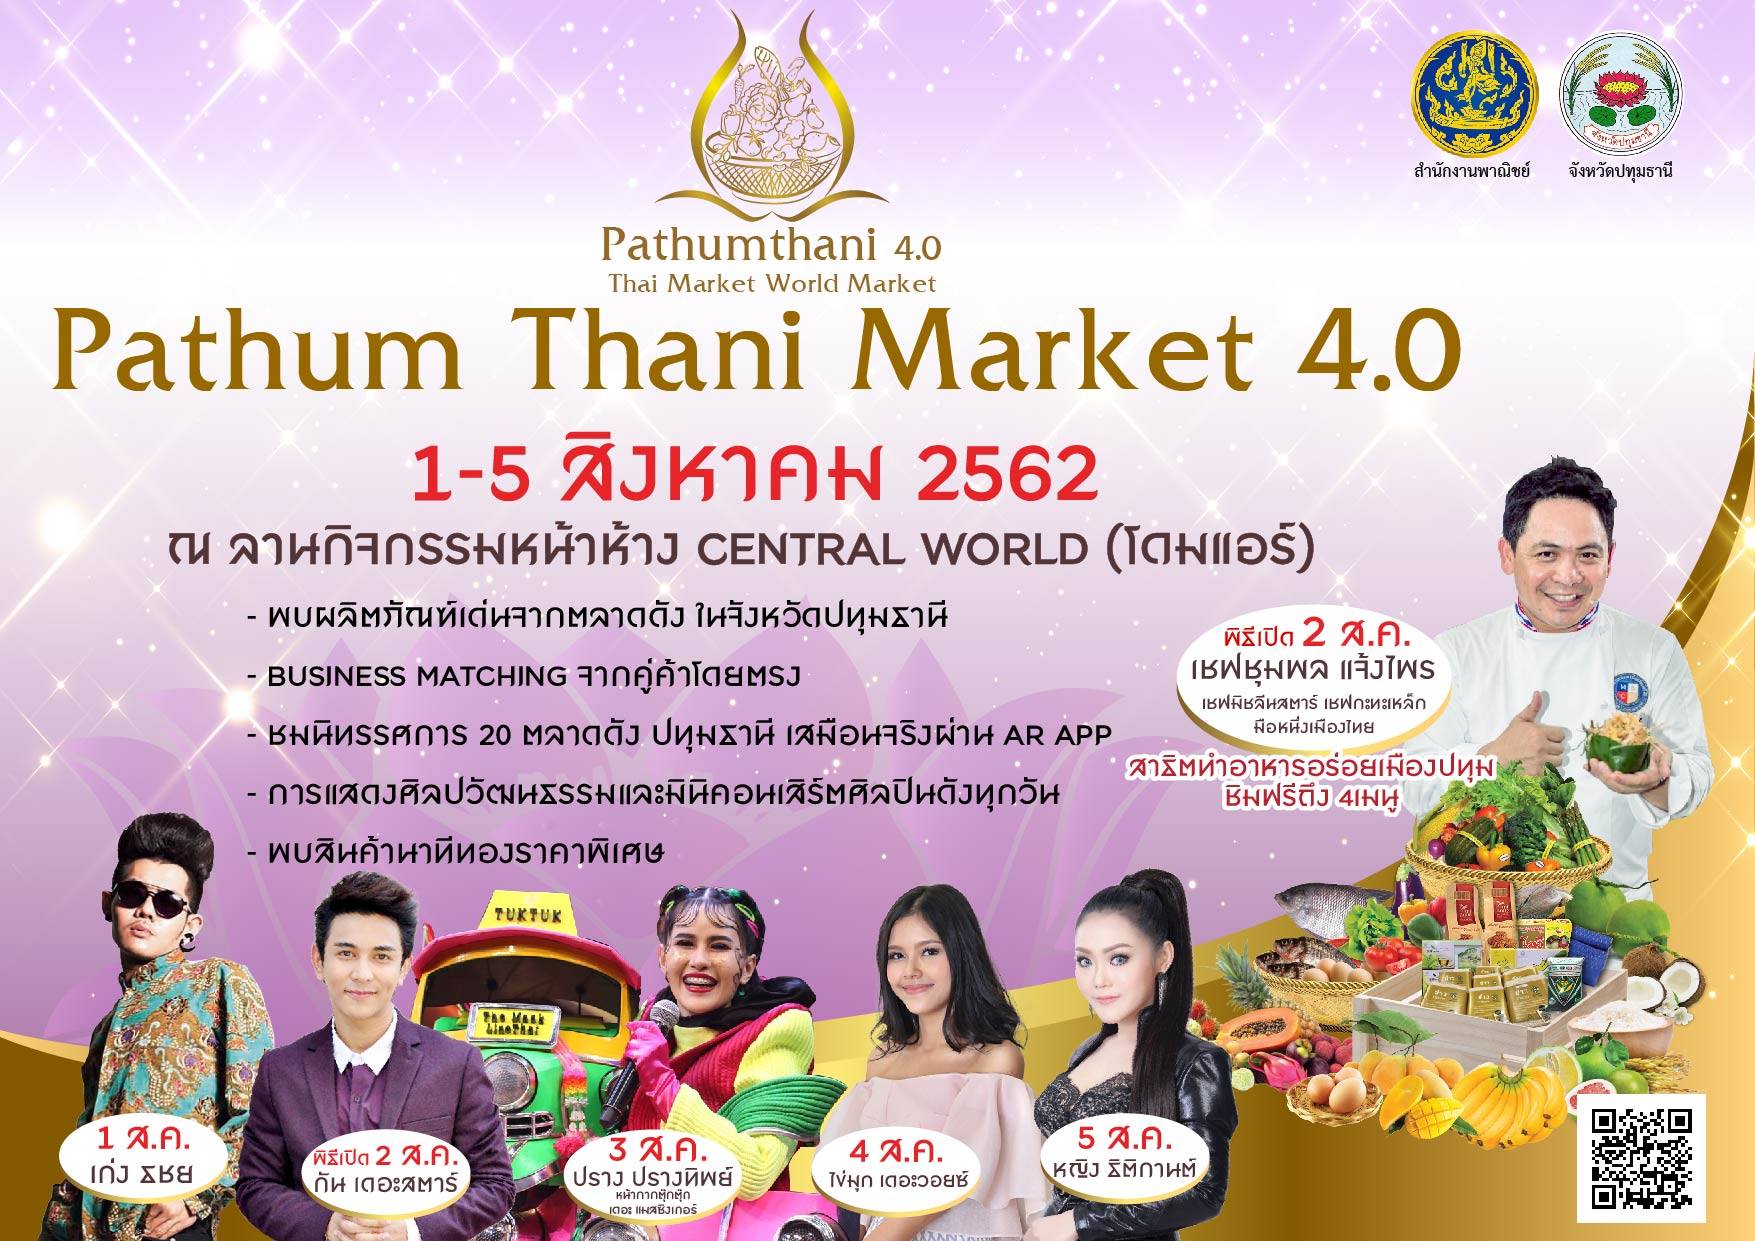 Pathum Thani Market 4.0